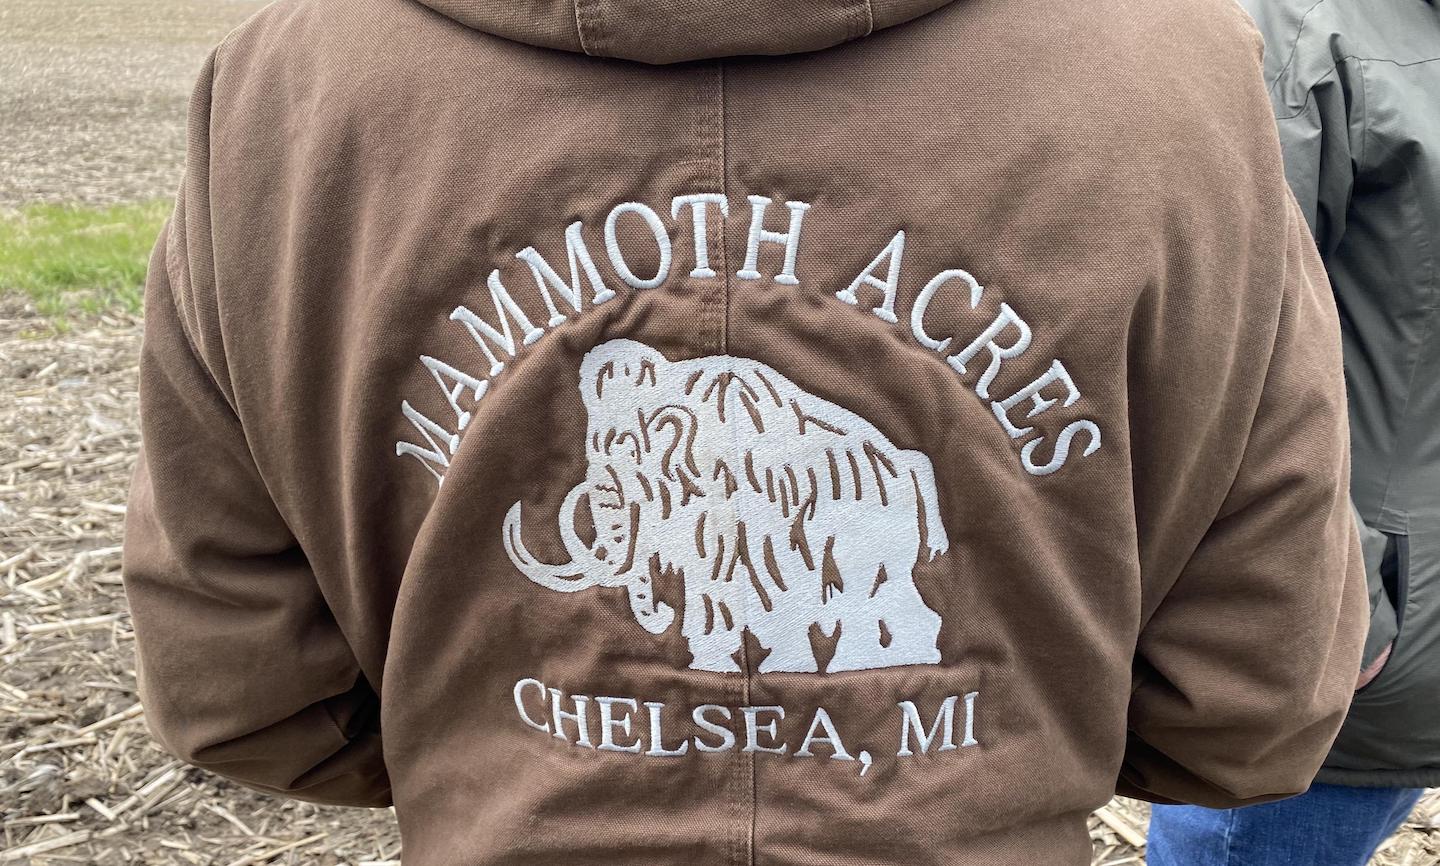 Mammoth Acres Farm